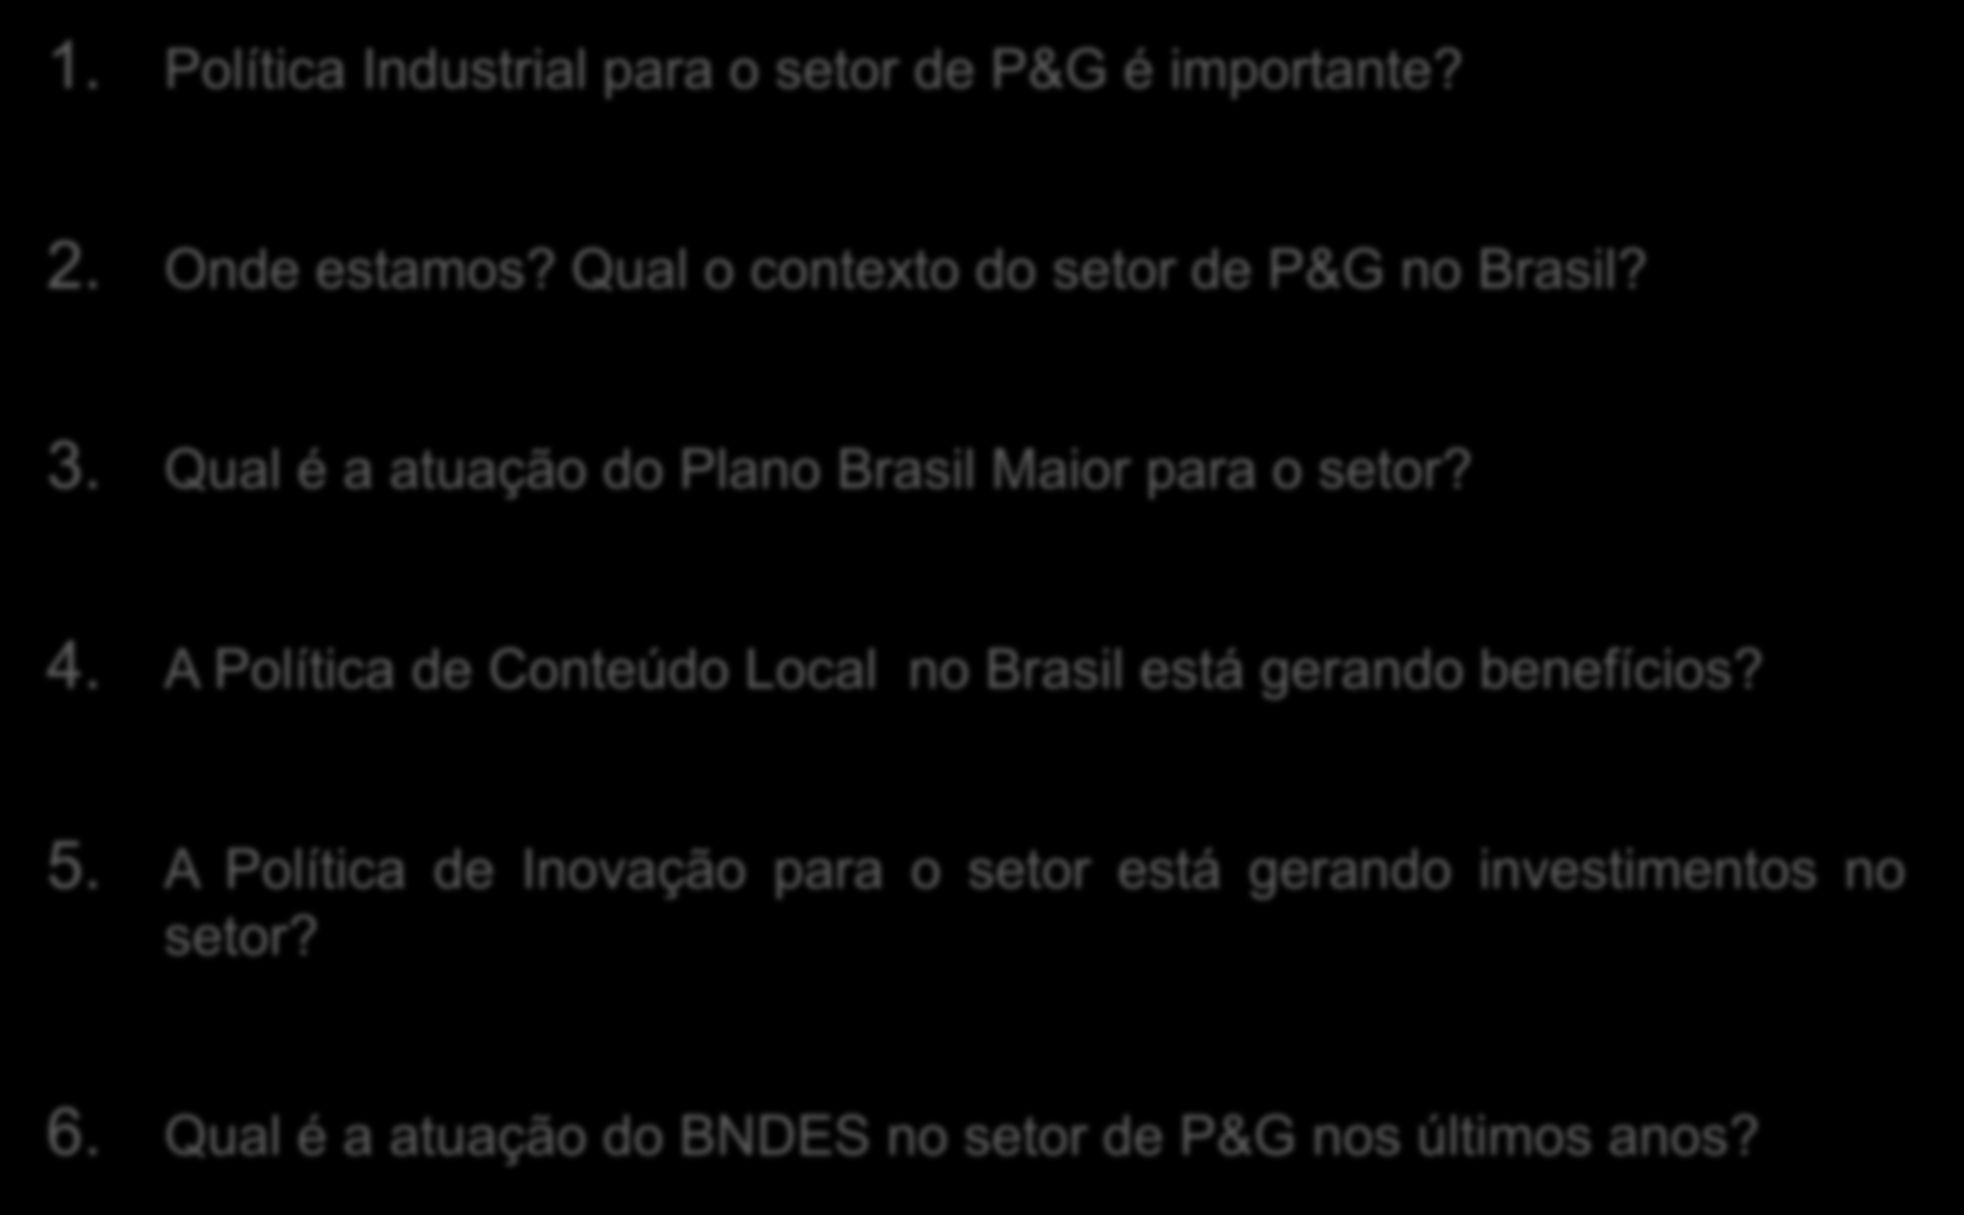 Agenda 1. Política Industrial para o setor de P&G é importante? 2. Onde estamos? Qual o contexto do setor de P&G no Brasil? 3. Qual é a atuação do Plano Brasil Maior para o setor? 4.